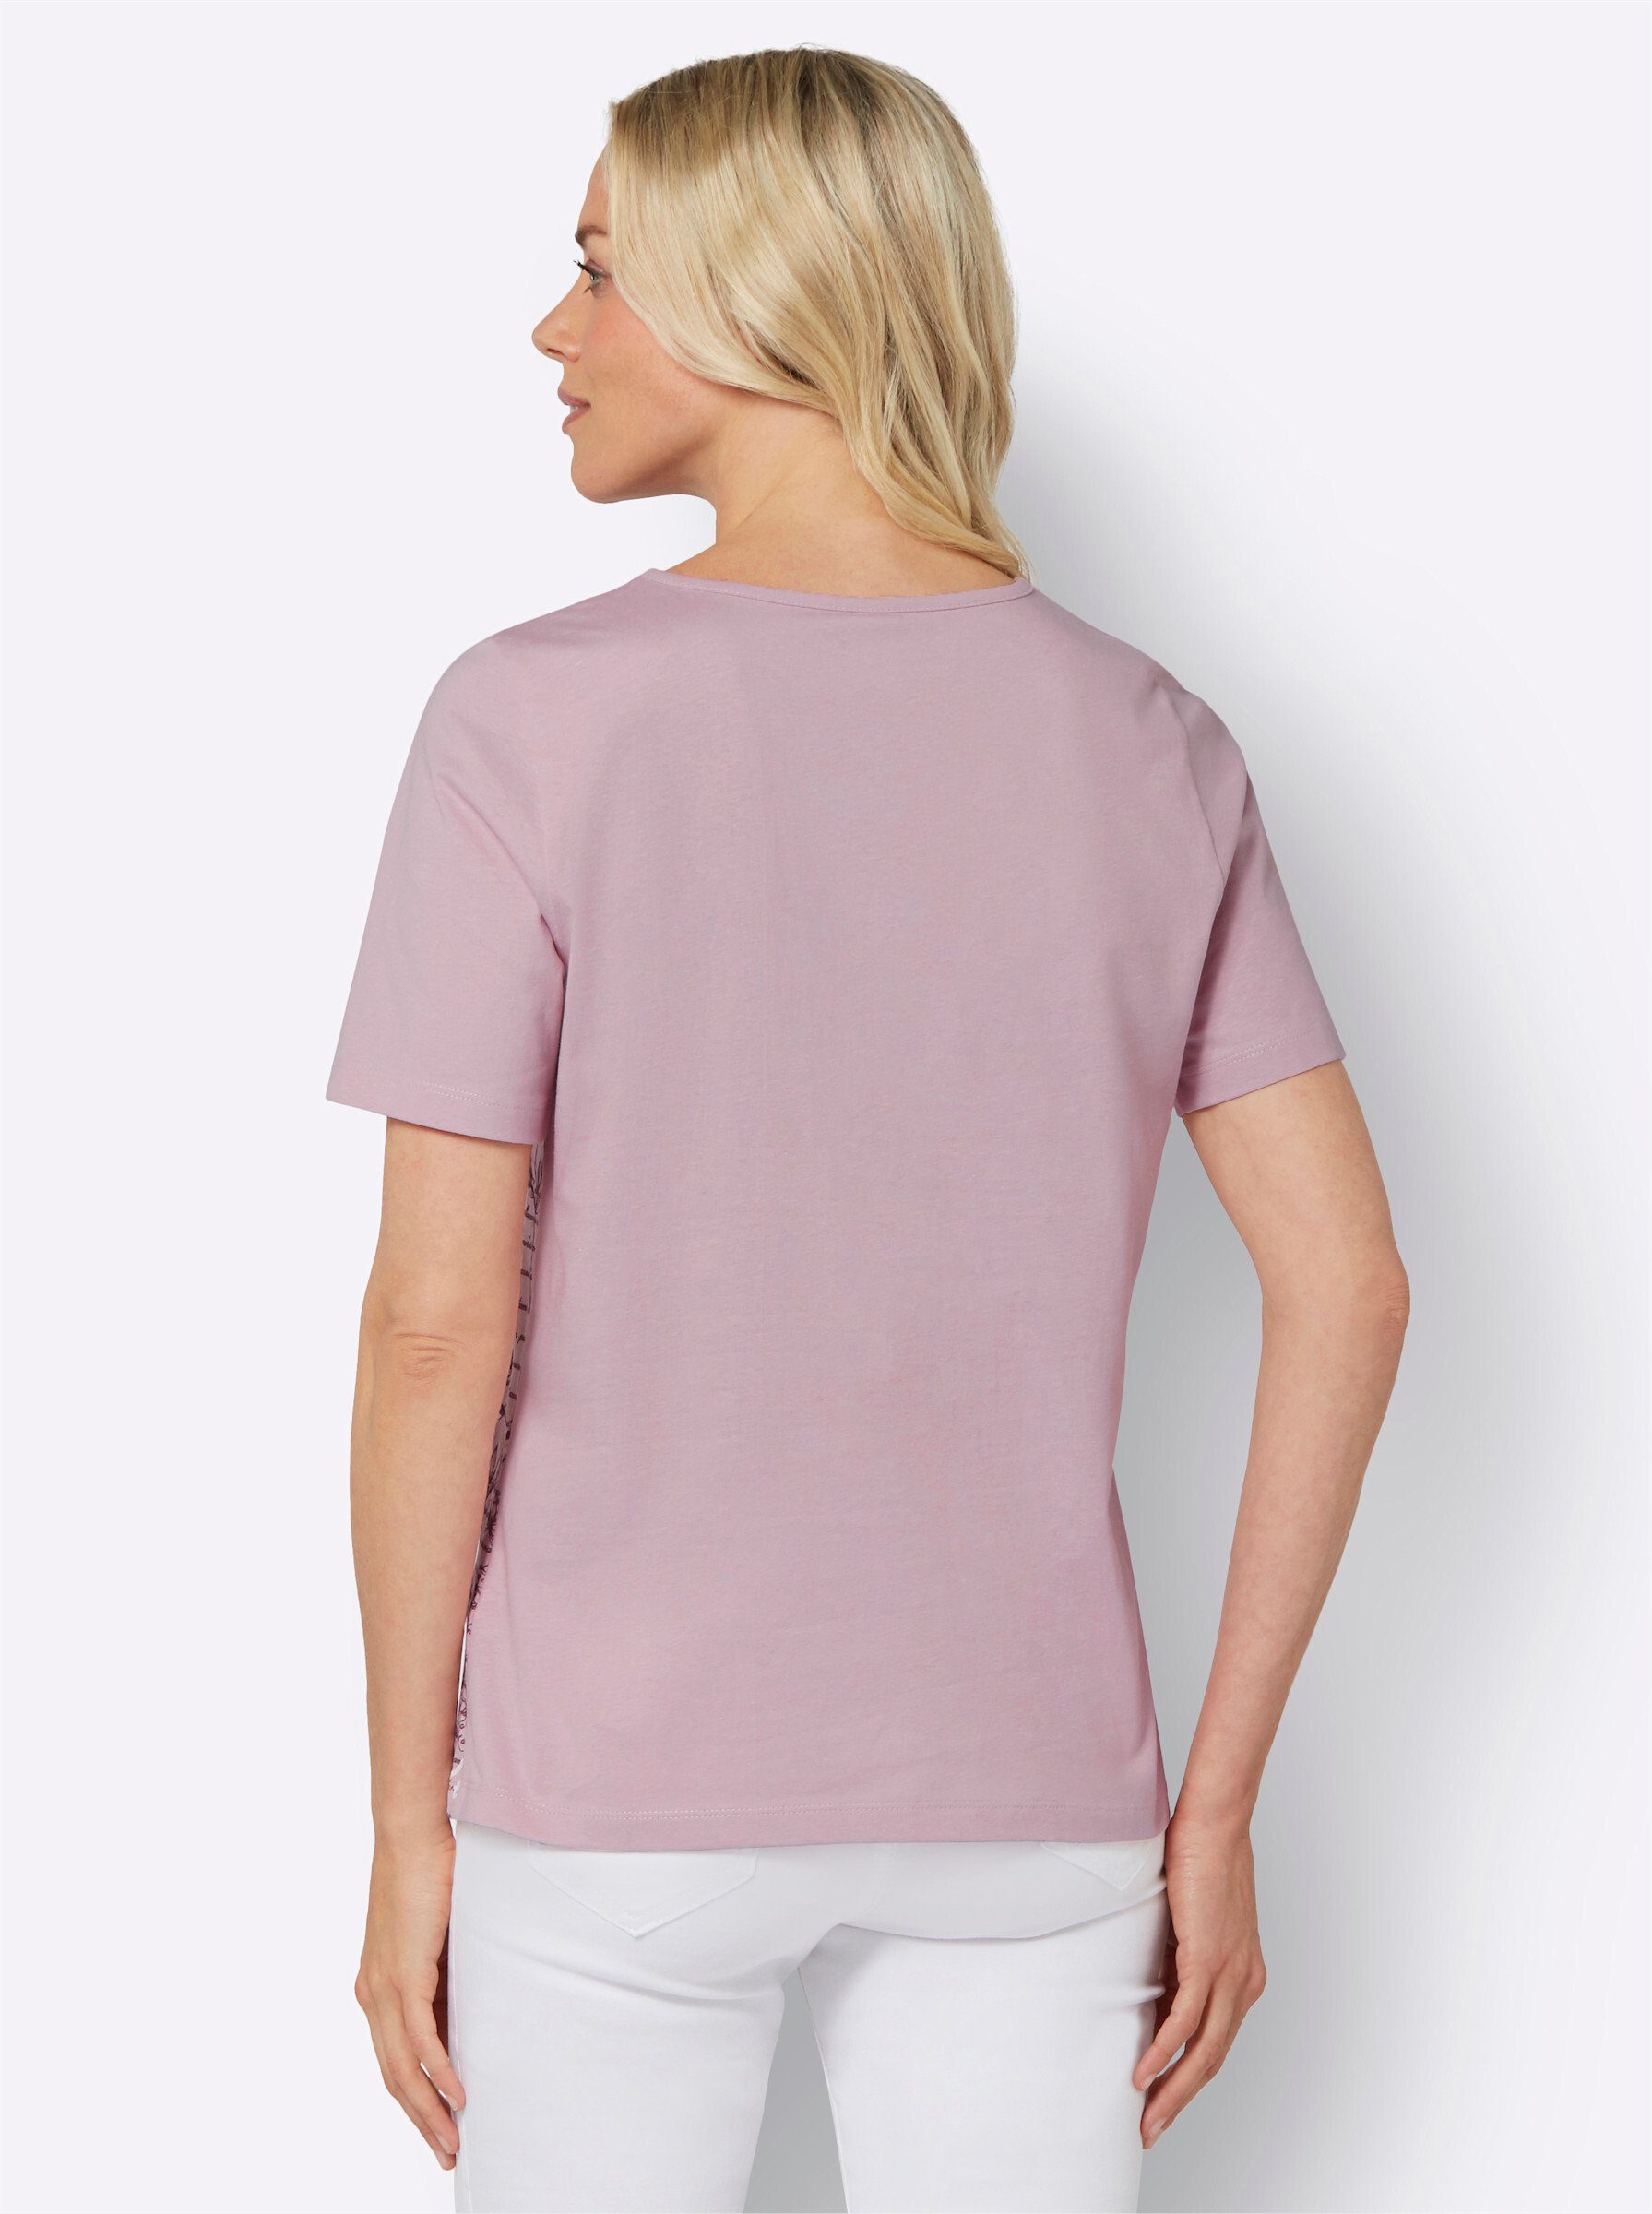 T-Shirt an! rosé-bedruckt Sieh